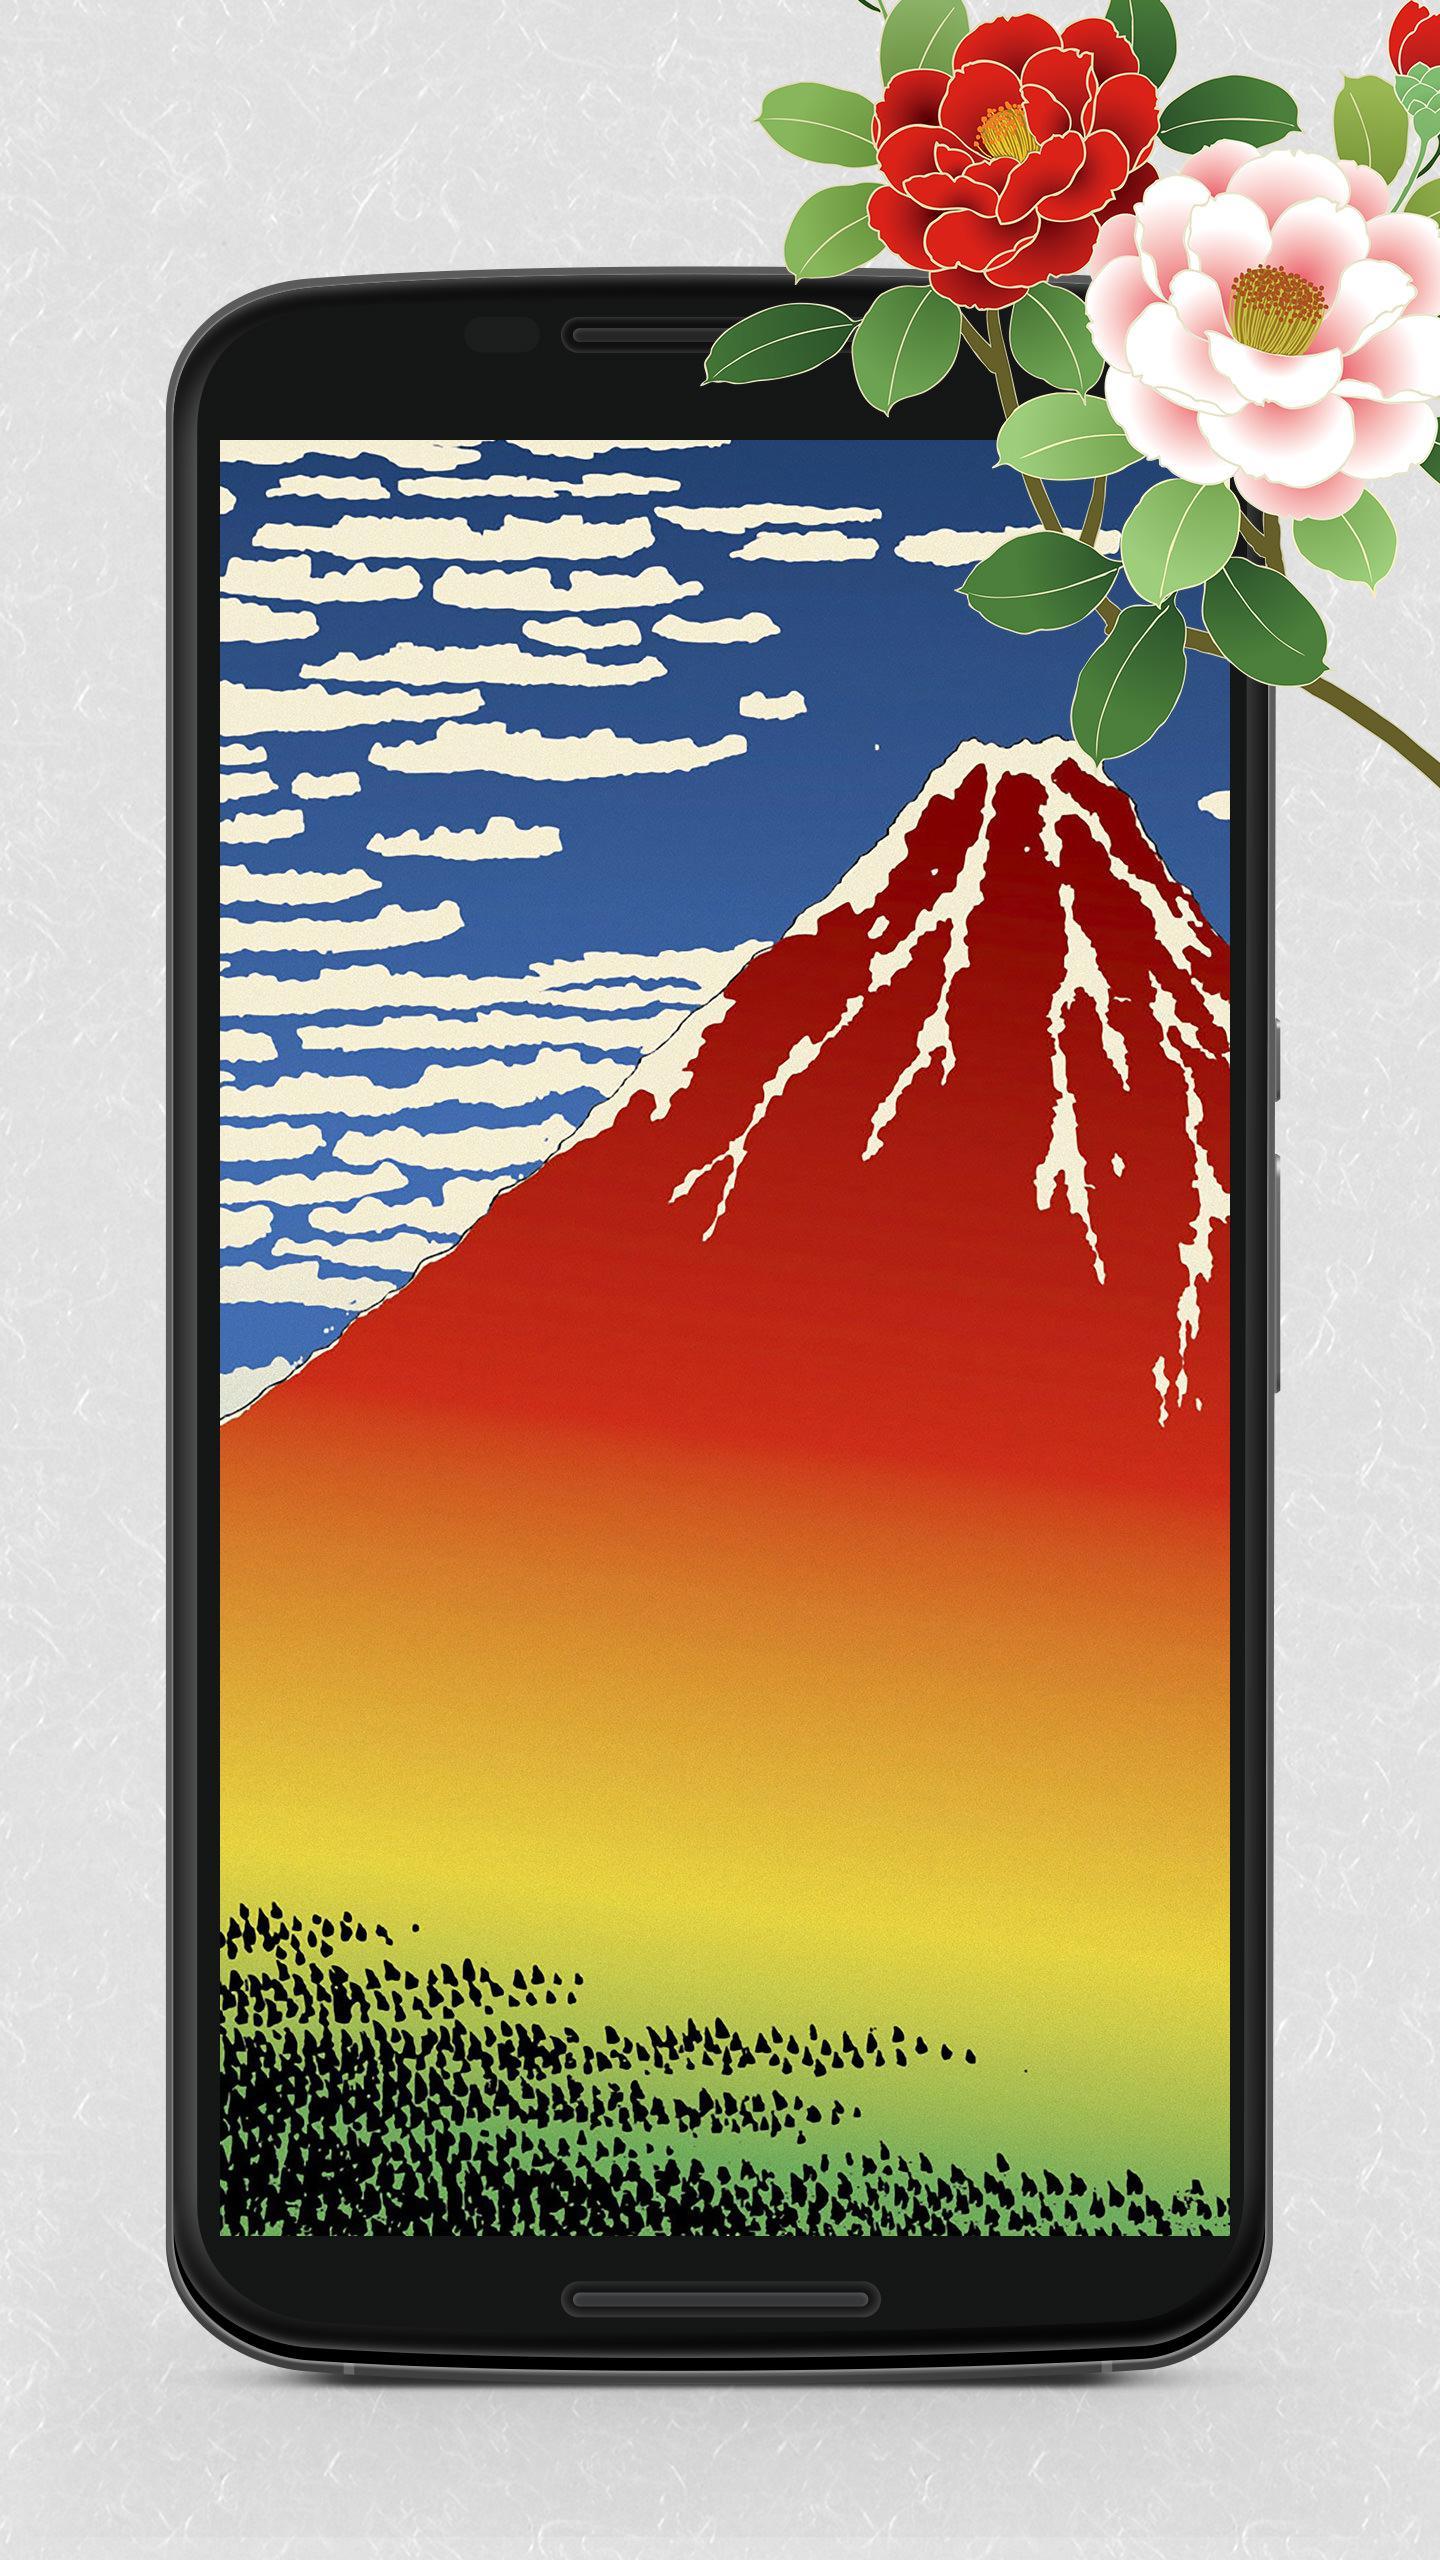 Android 用の 浮世絵壁紙 美しい日本画ギャラリー Apk をダウンロード